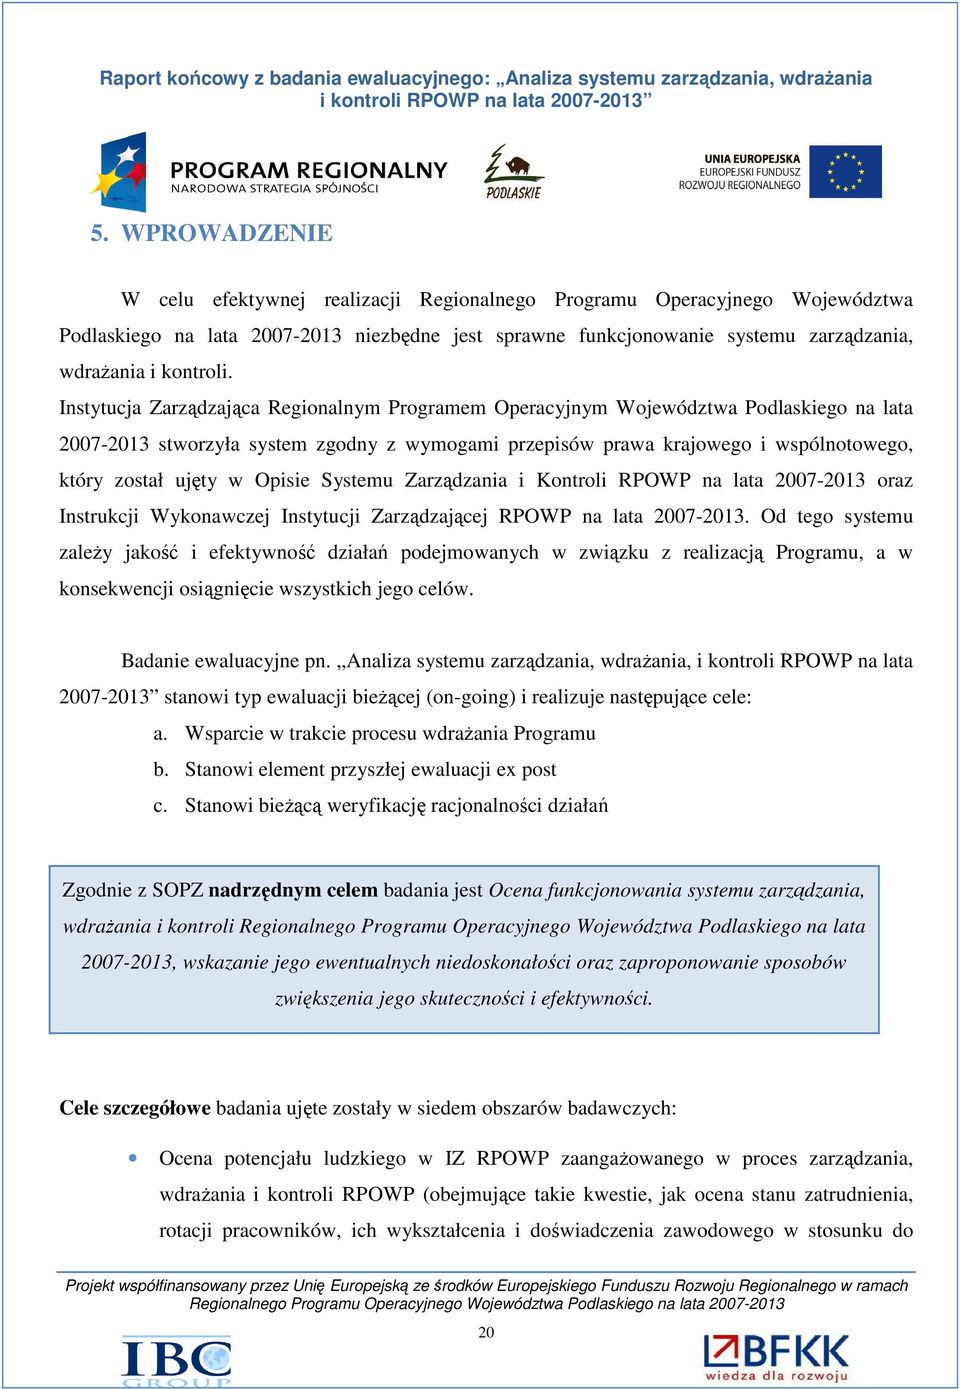 Instytucja Zarządzająca Regionalnym Programem Operacyjnym Województwa Podlaskiego na lata 2007-2013 stworzyła system zgodny z wymogami przepisów prawa krajowego i wspólnotowego, który został ujęty w